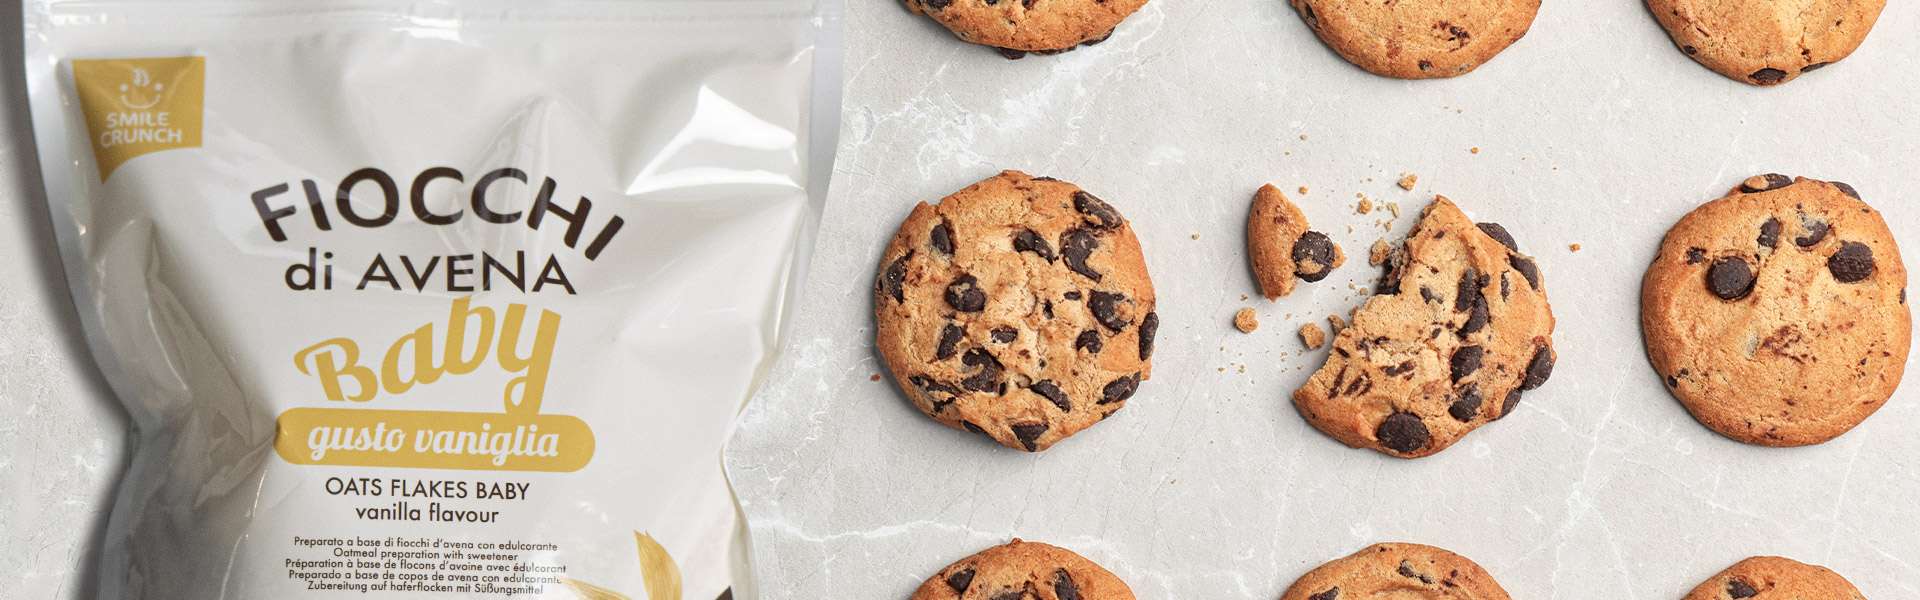 Biscuits au chocolat: une recette avec des flocons